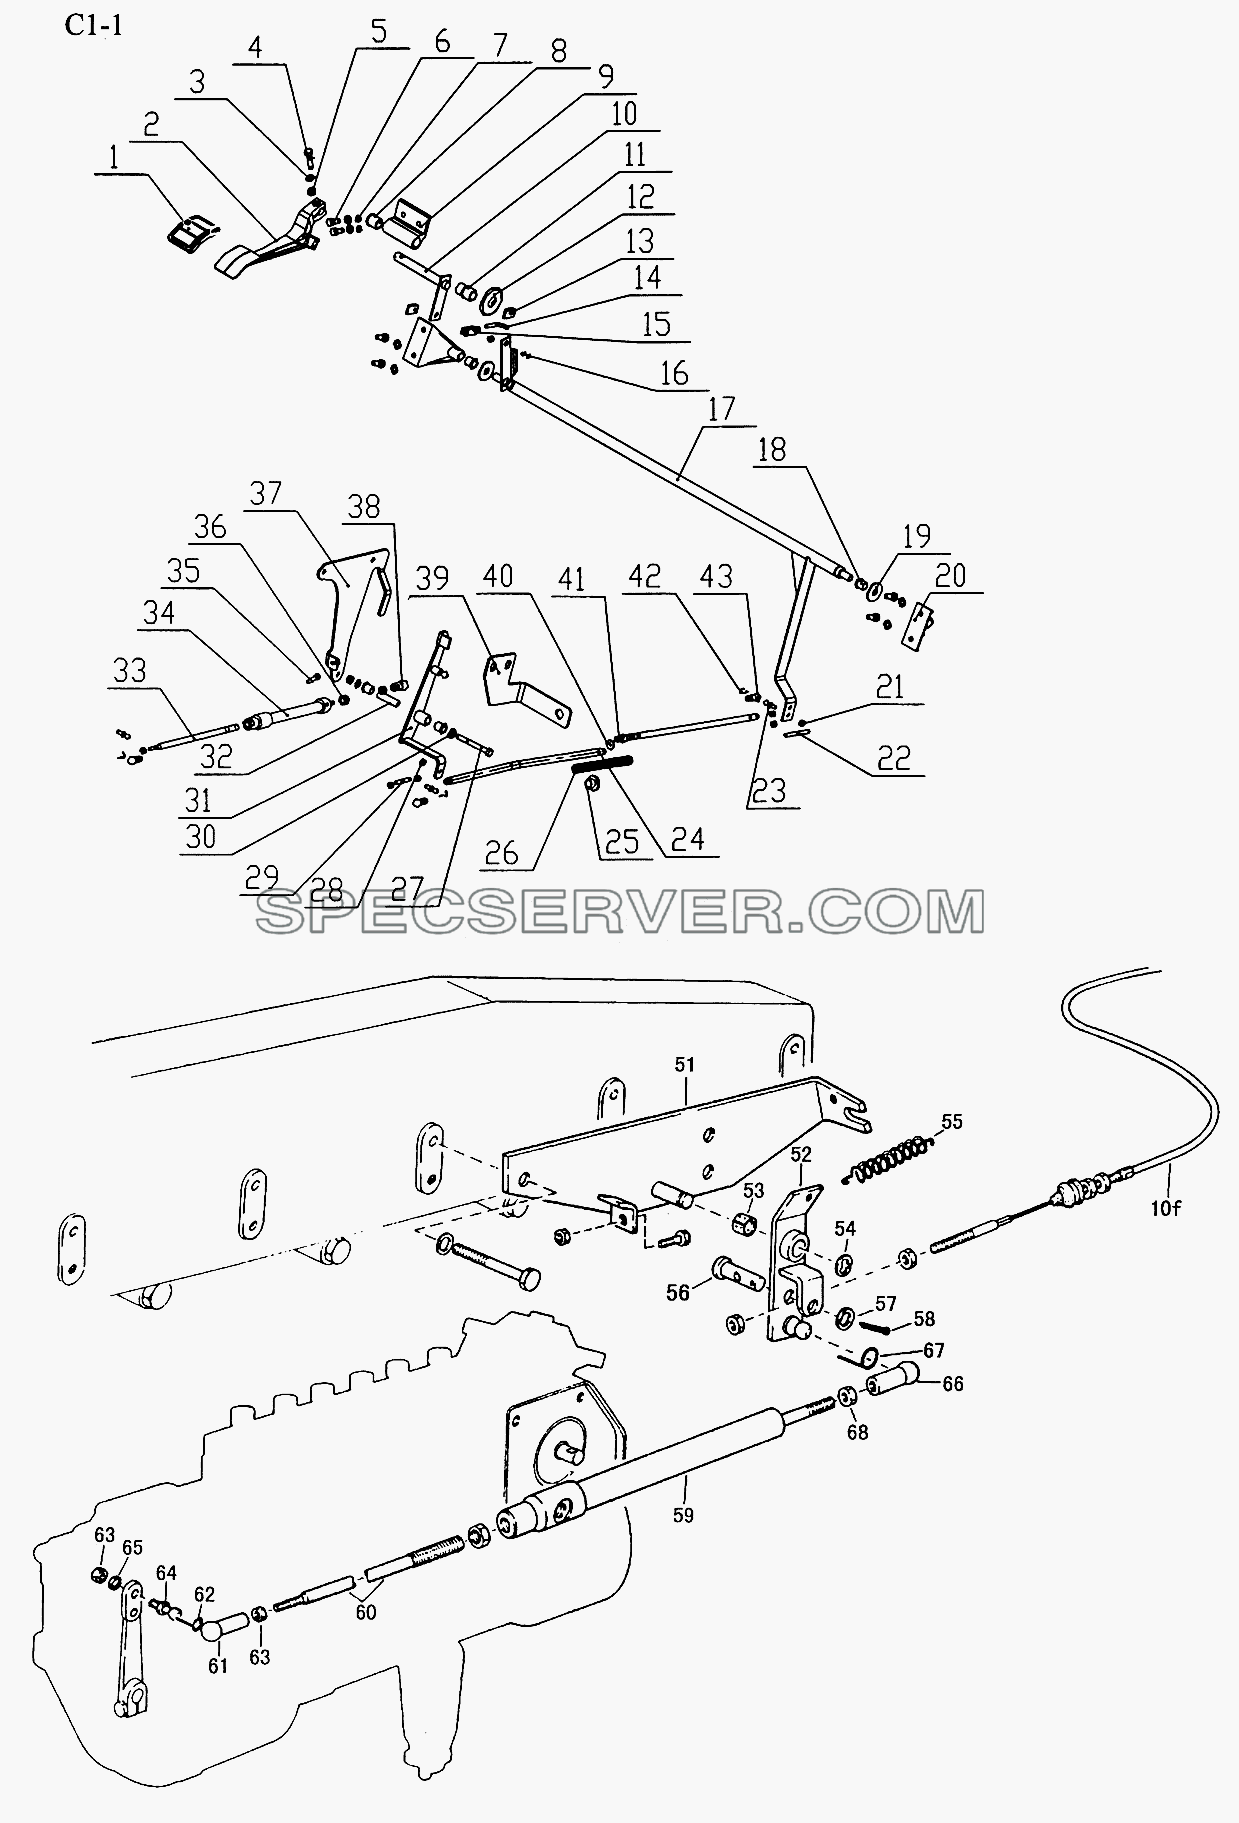 OPERATION DEVICE (C1-1) для Sinotruk 6x4 Tractor (371) (список запасных частей)